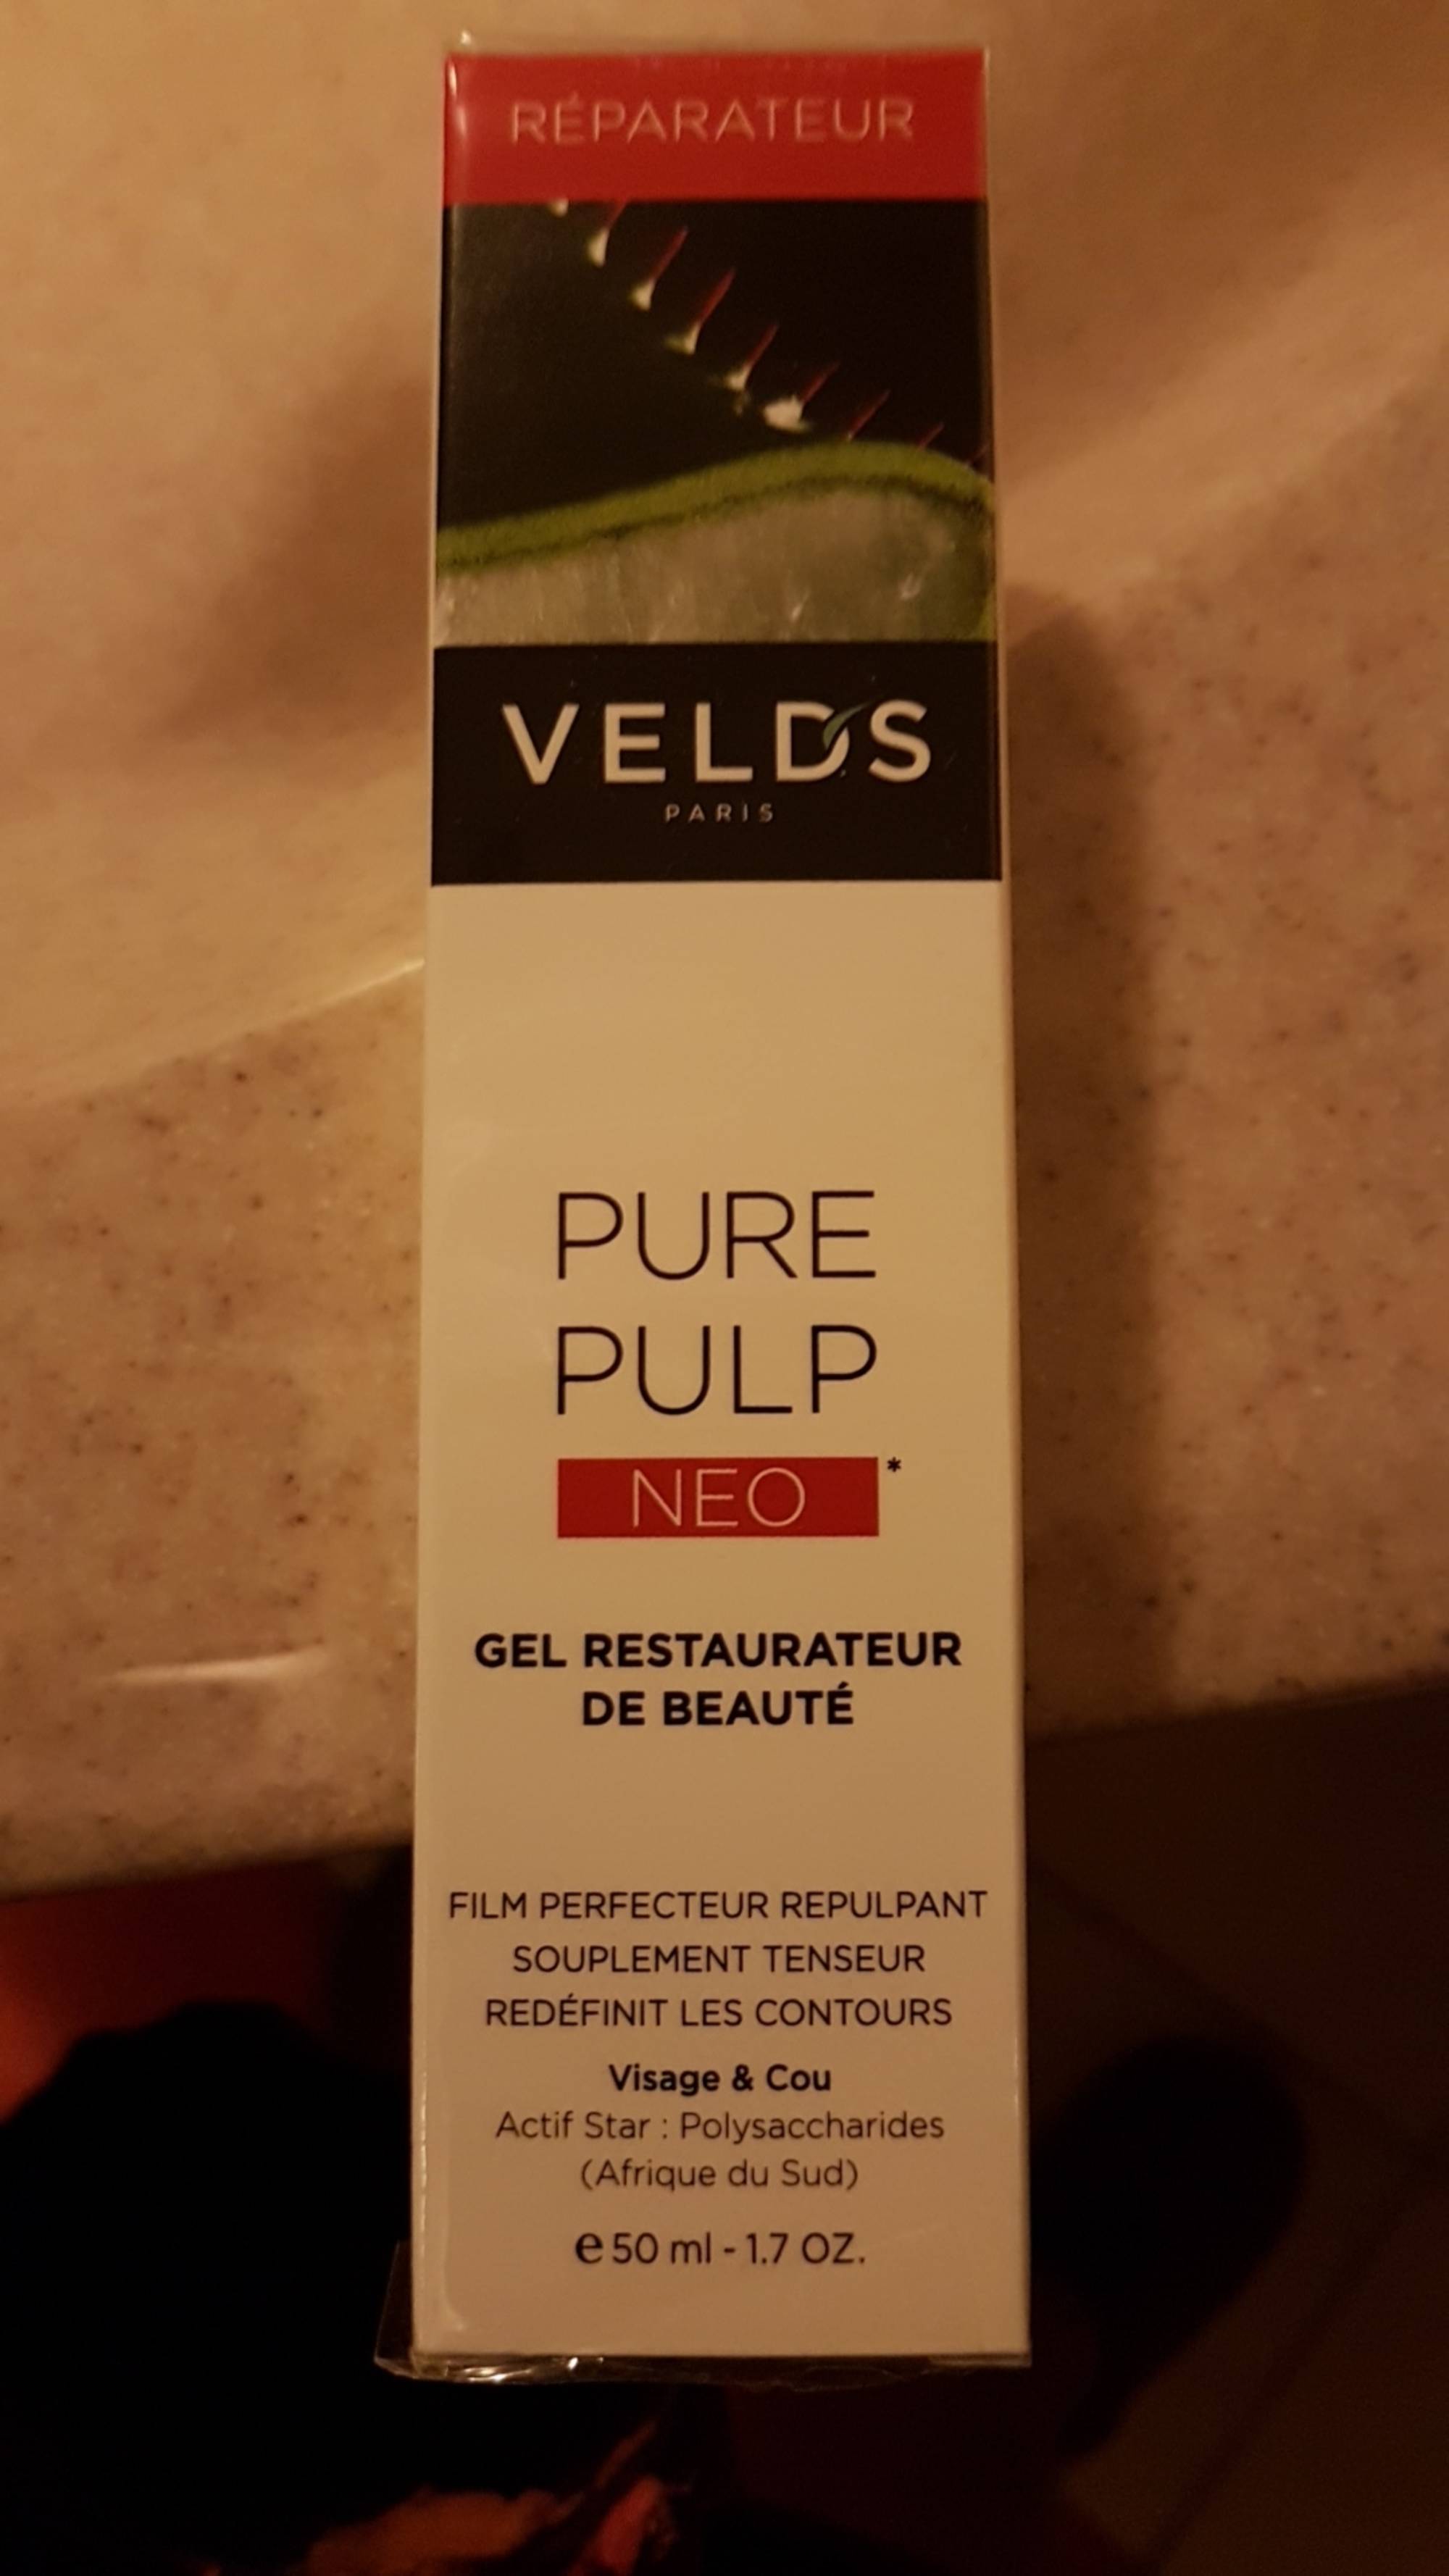 VELD'S - Pure pulp neo - Gel restaurateur de beauté 